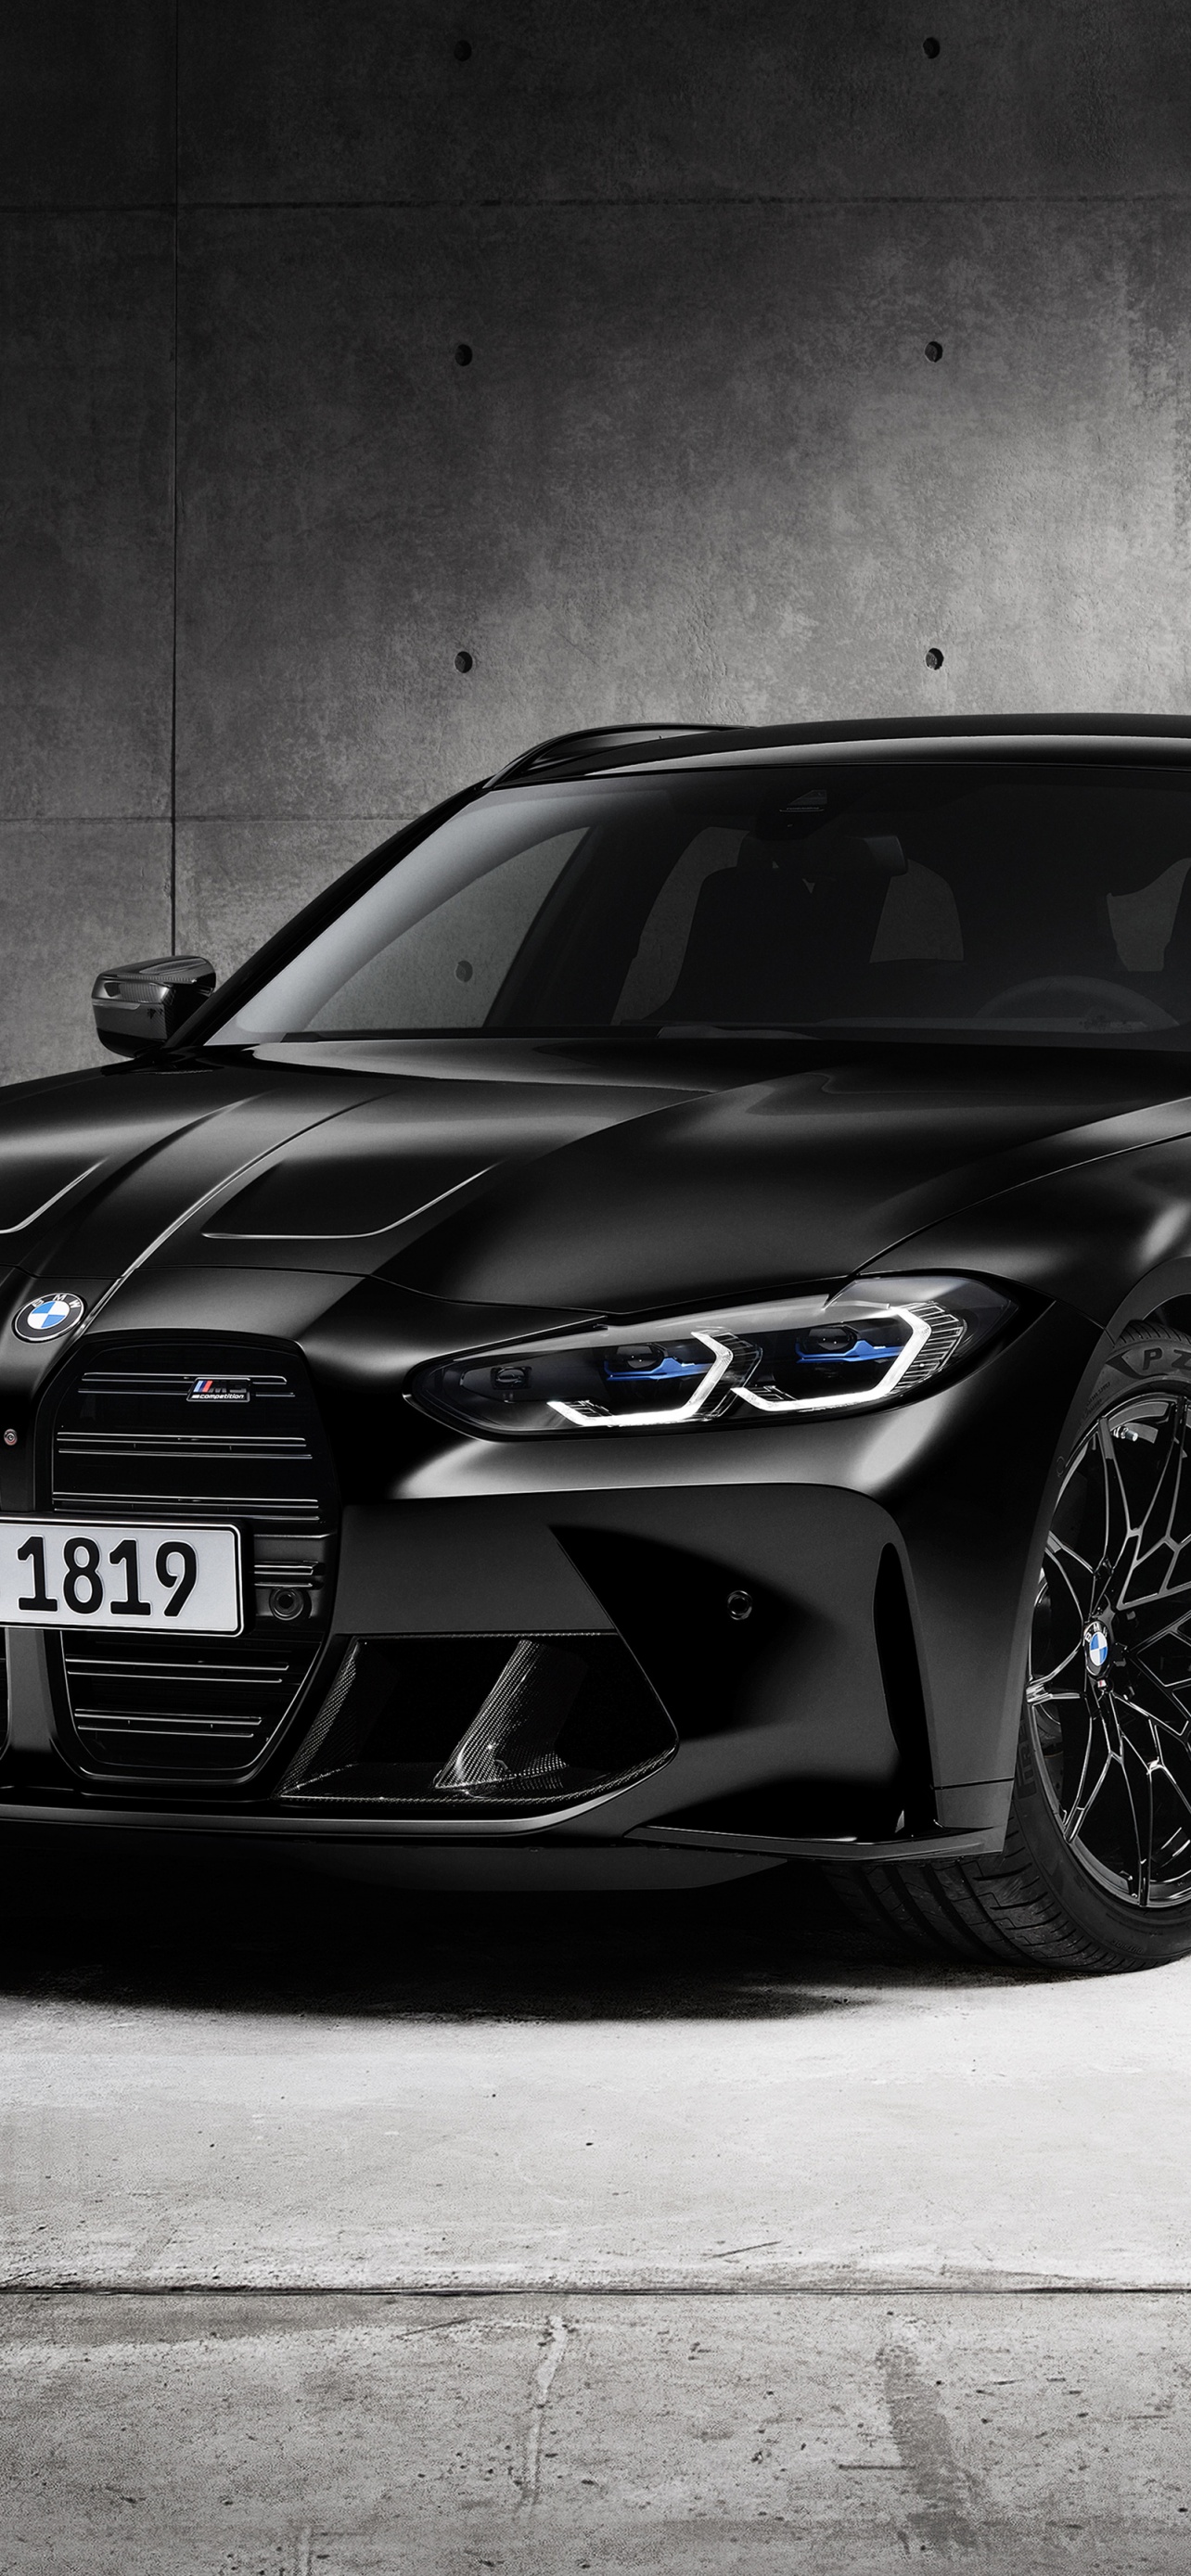 Vẻ đẹp và quyền lực của chiếc xe BMW M3 Competition Touring đen sẽ được thể hiện một cách tuyệt vời qua hình nền ô tô cao cấp này. Sự hoàn hảo của dòng xe này kết hợp với chất lượng hình ảnh 4K, 5K năm 2022 sẽ không làm bạn thất vọng. Hãy cập nhật ngay hình nền này để điện thoại của bạn trở nên độc đáo và thu hút hơn.